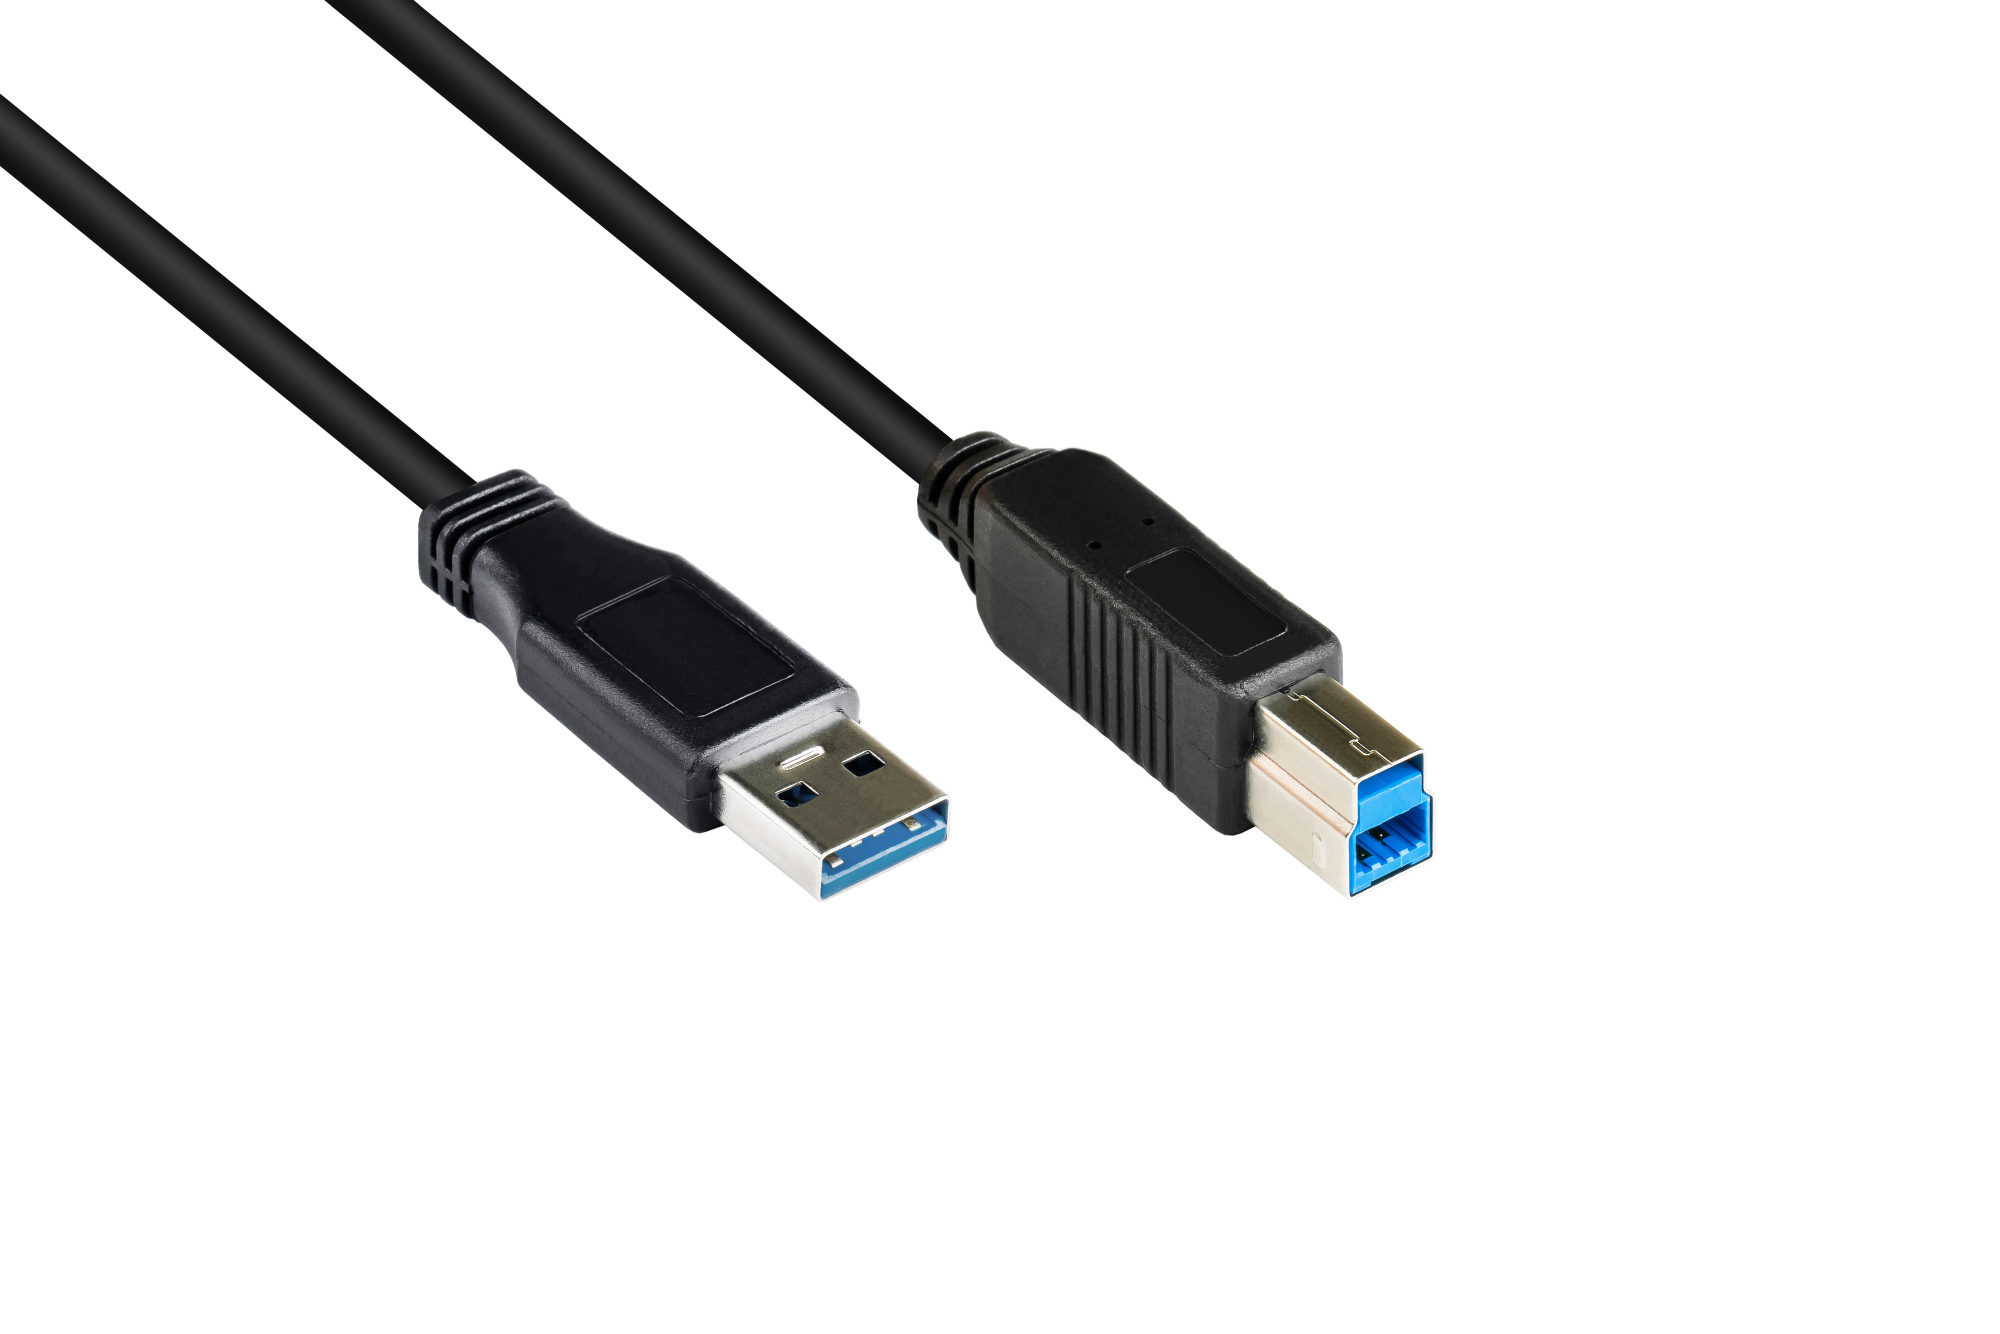 Anschlusskabel USB 3.0 Stecker A an Stecker B, schwarz, 0,5m, Good Connections®